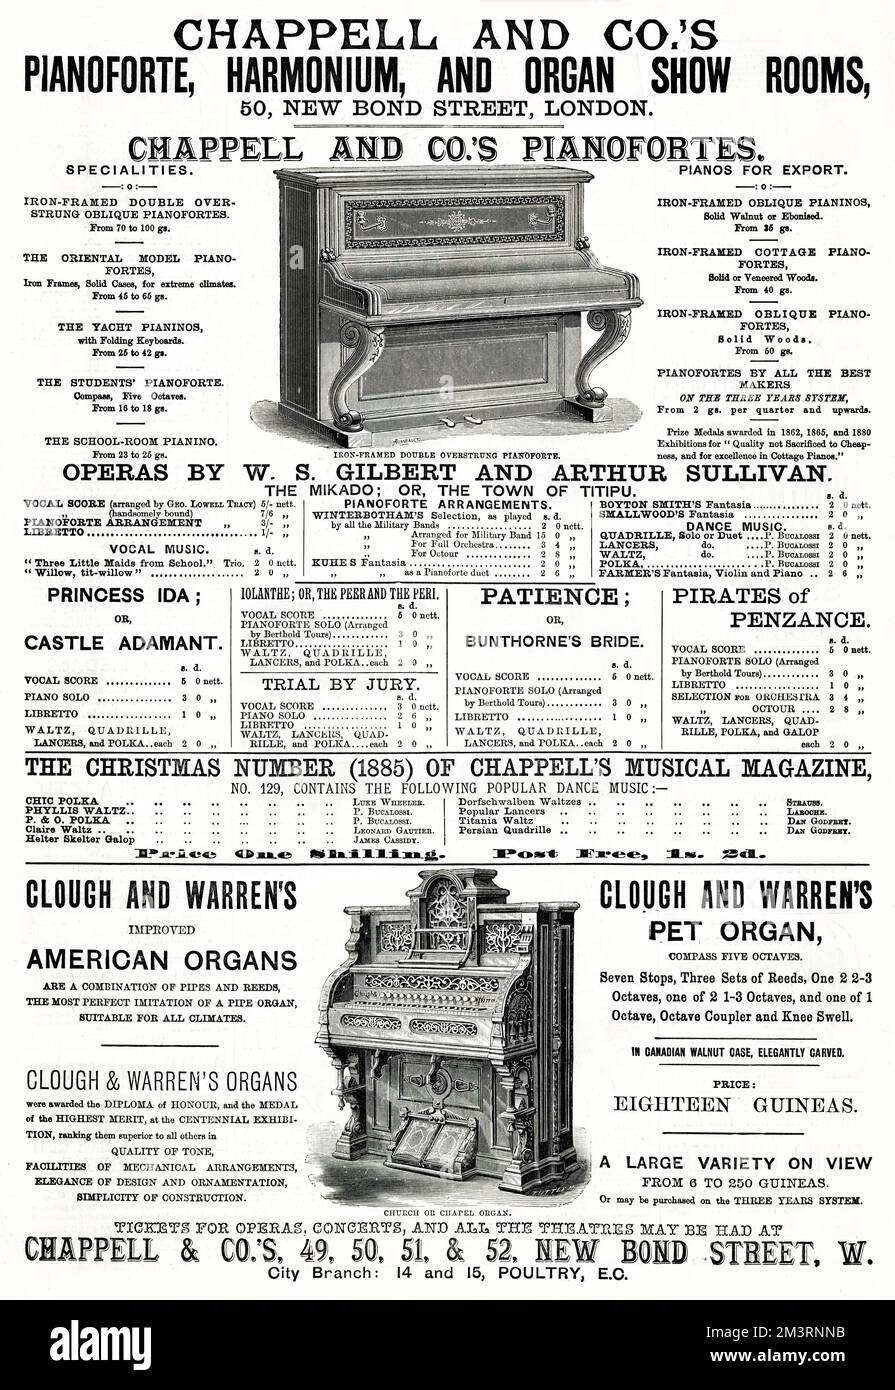 Publicités pour pianoforte à double cadre de fer et église ou orgue de chapelle, disponibles auprès de Chappell & Co. À New Bond Street, Londres. Date: 1885 Banque D'Images